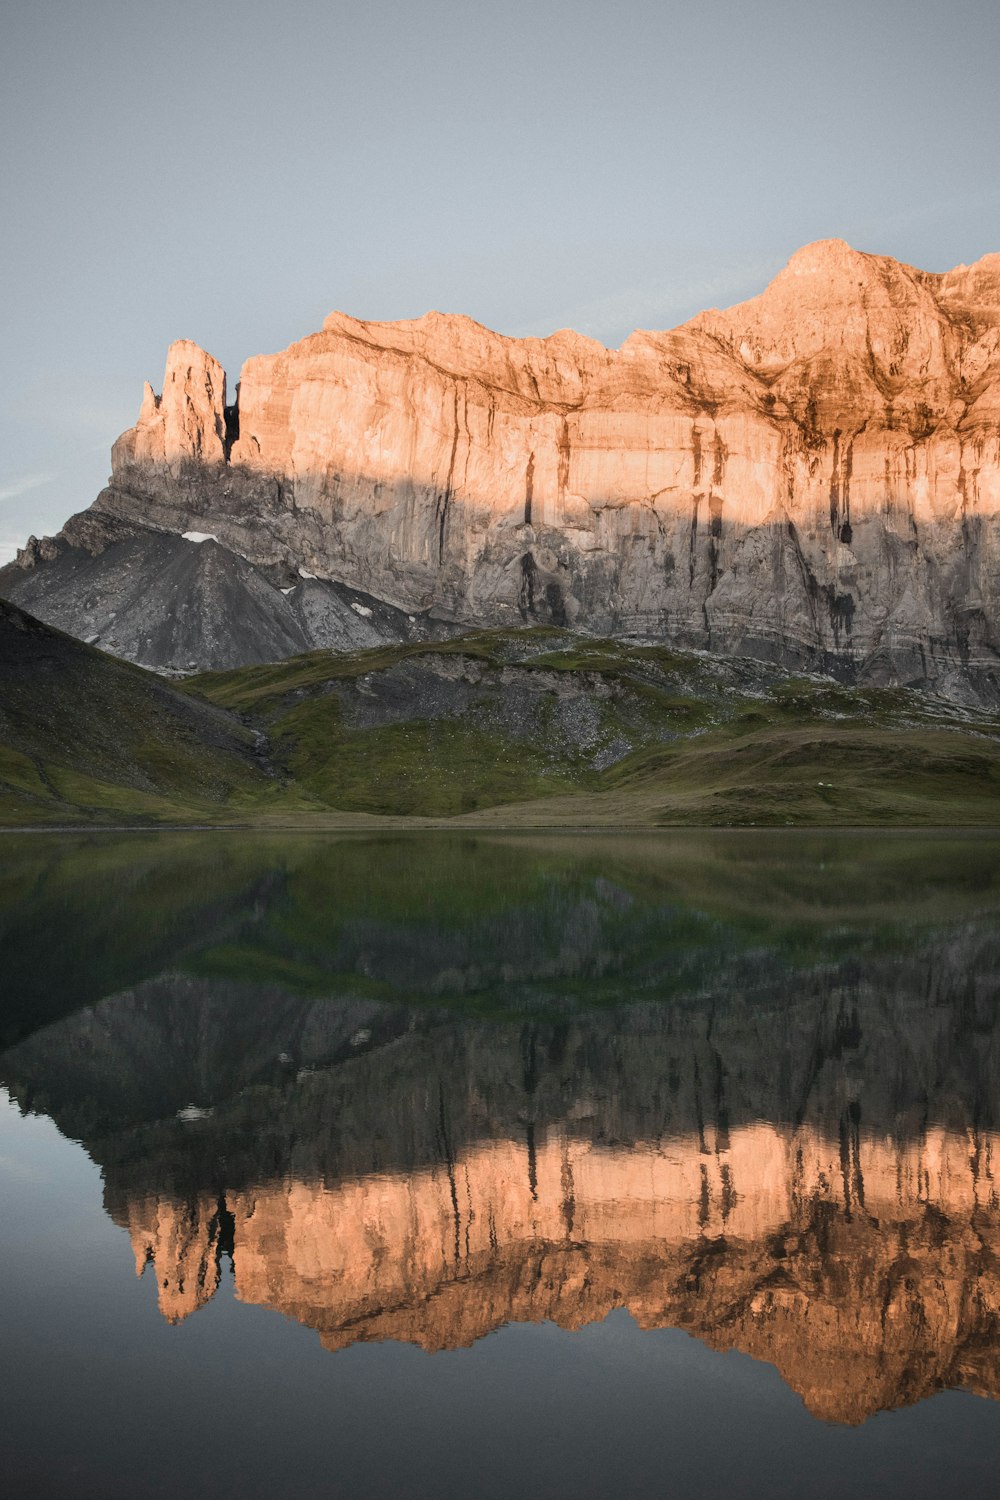 Montaña rocosa marrón junto al lago durante el día